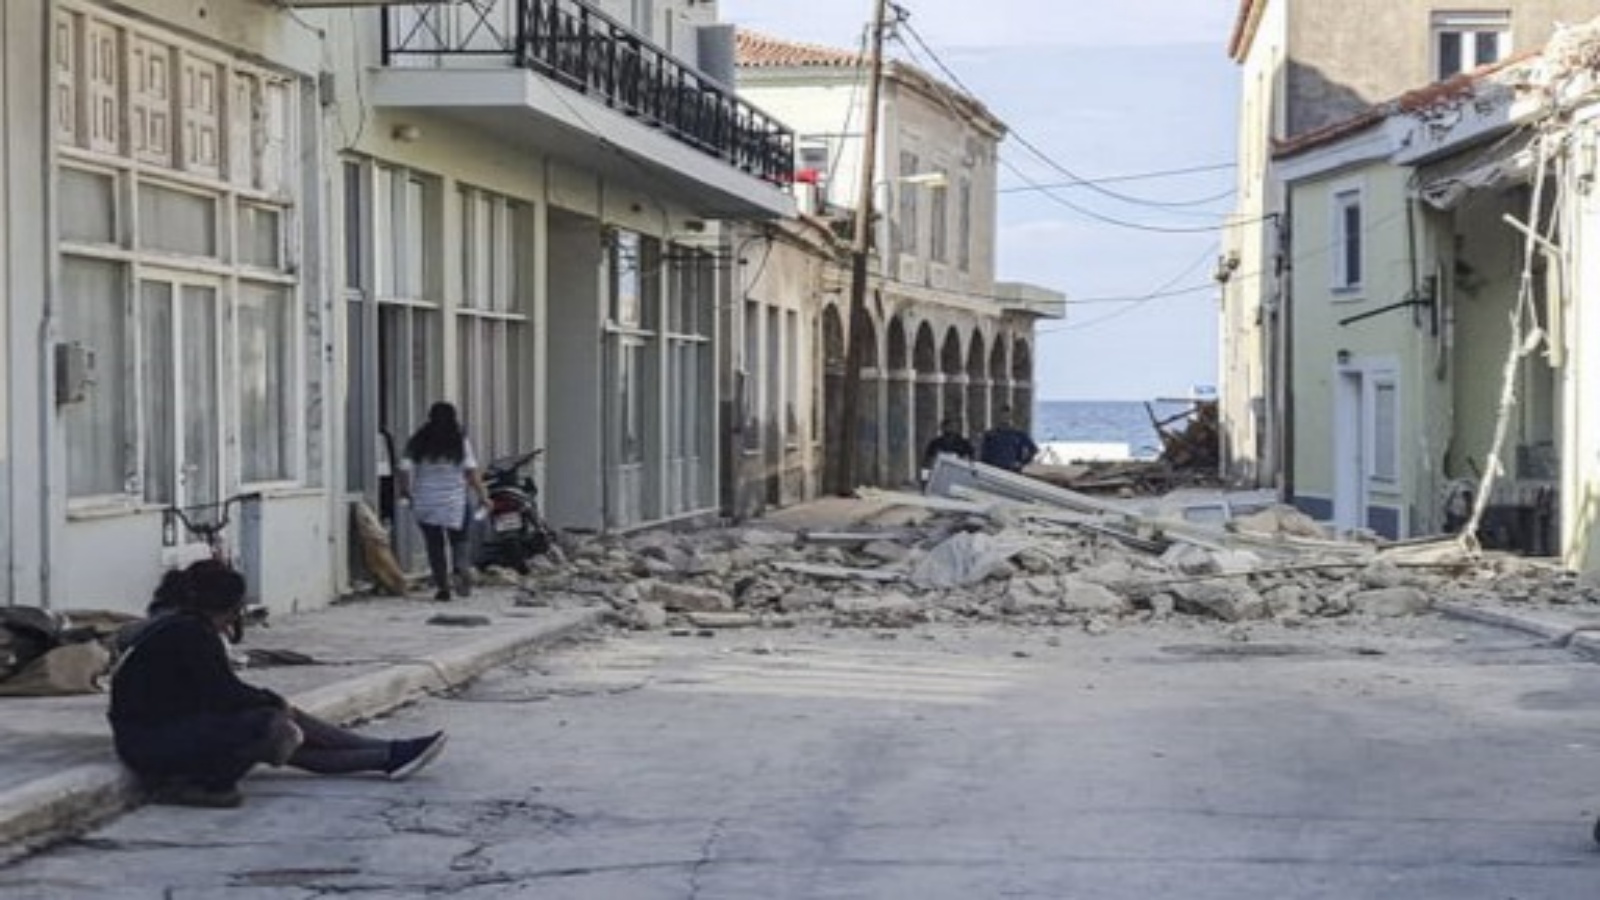 أشخاص يمشون أمام منزل مدمر بعد زلزال ضرب جزيرة ساموس في 30 أكتوبر 2020. ضرب زلزال قوي اليونان وتركيا في 30 أكتوبر 2020 